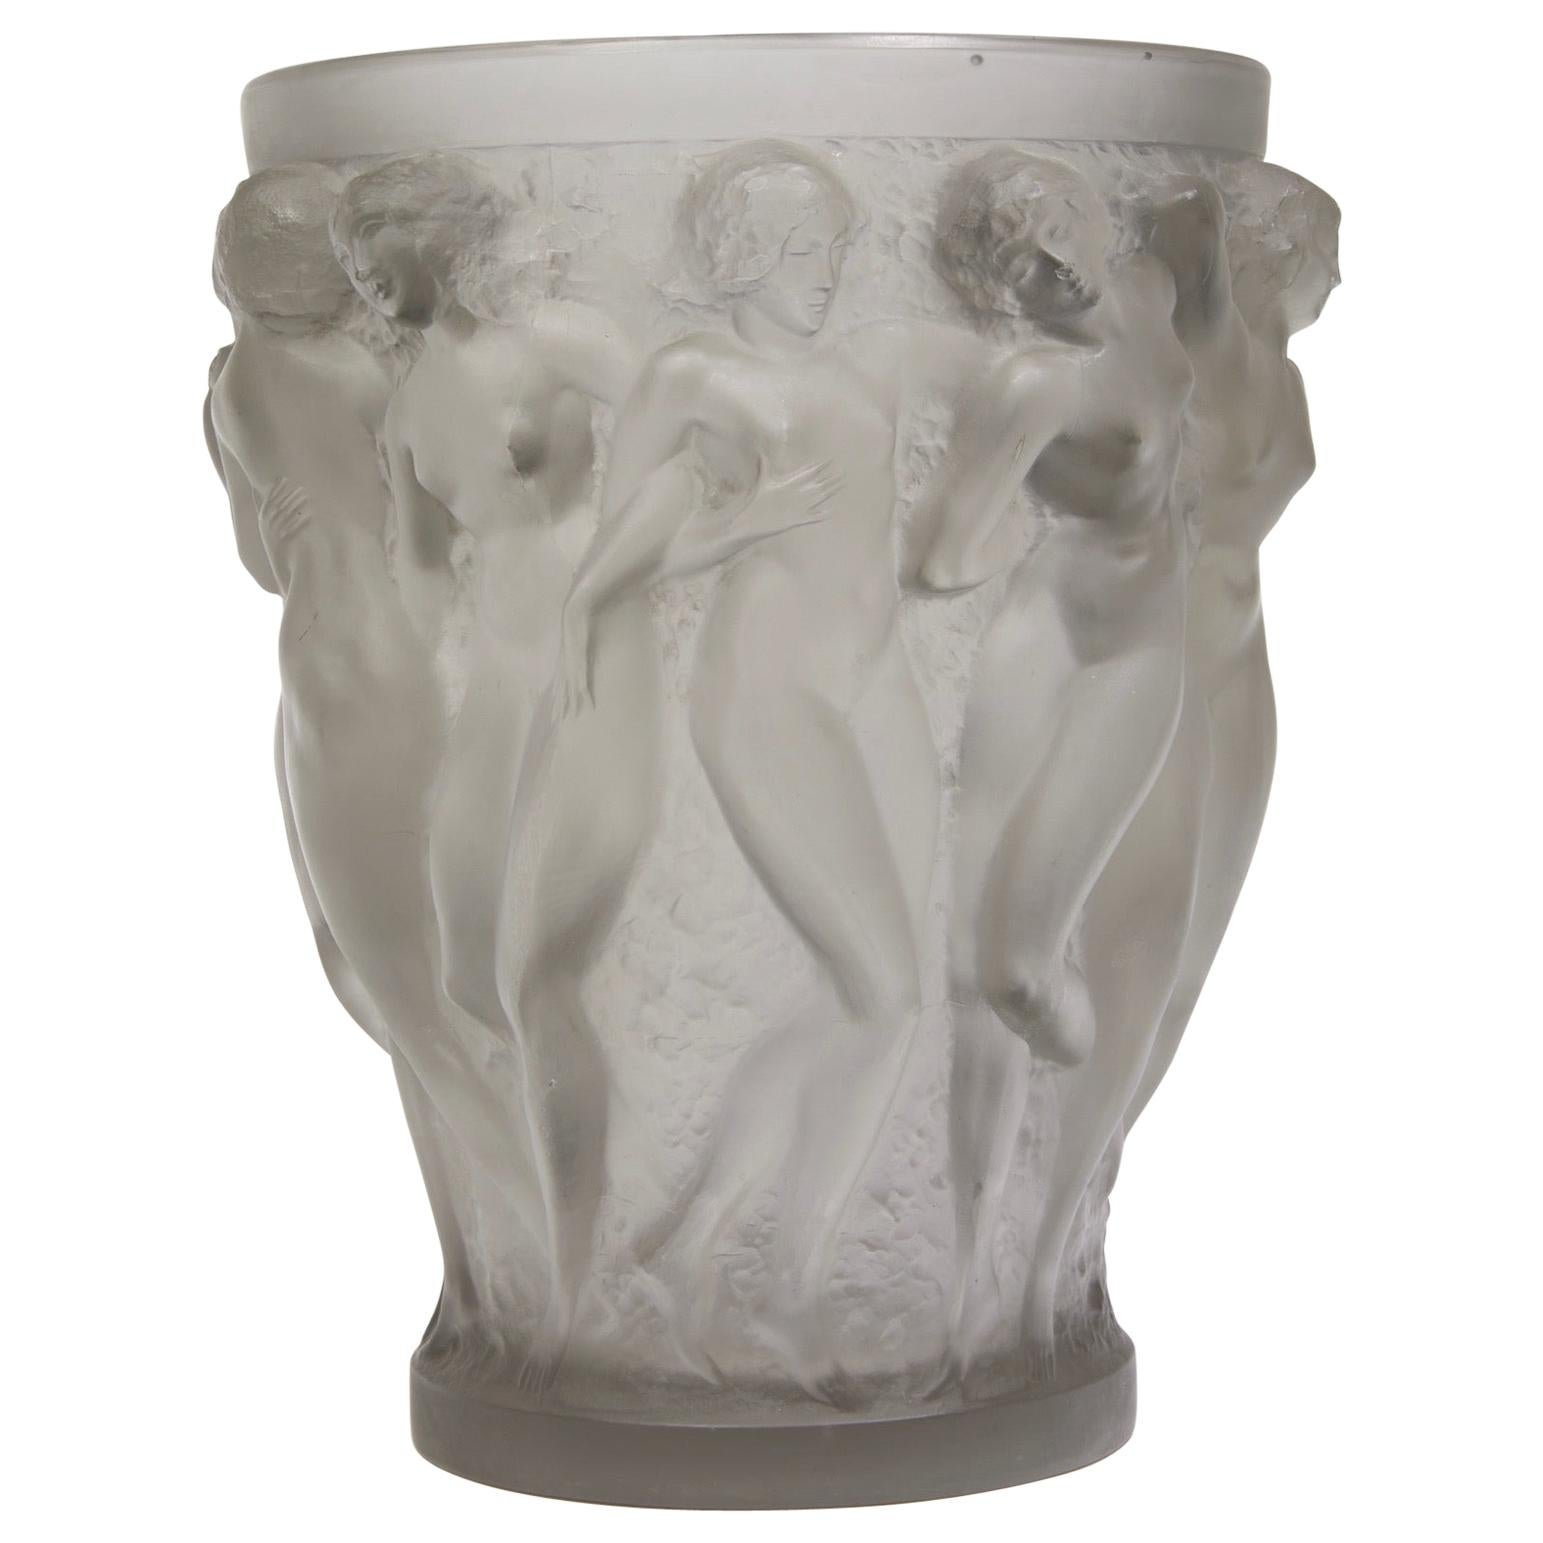 René Lalique, Bacchae Vase, 1927